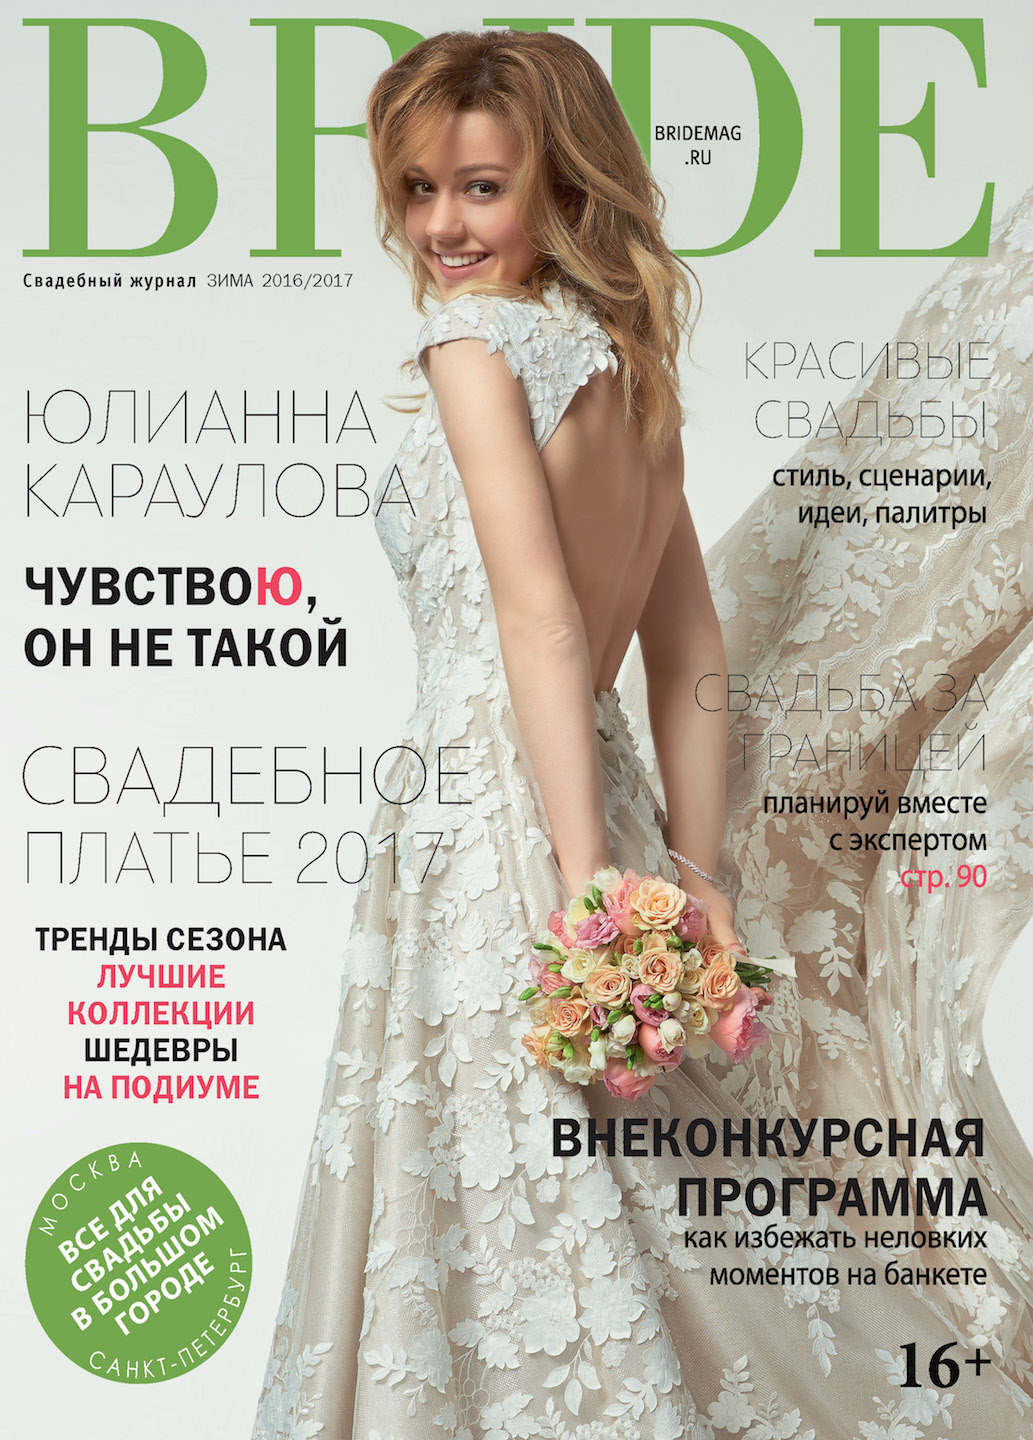 Свадебный журнал BRIDE. Зима 2016/2017